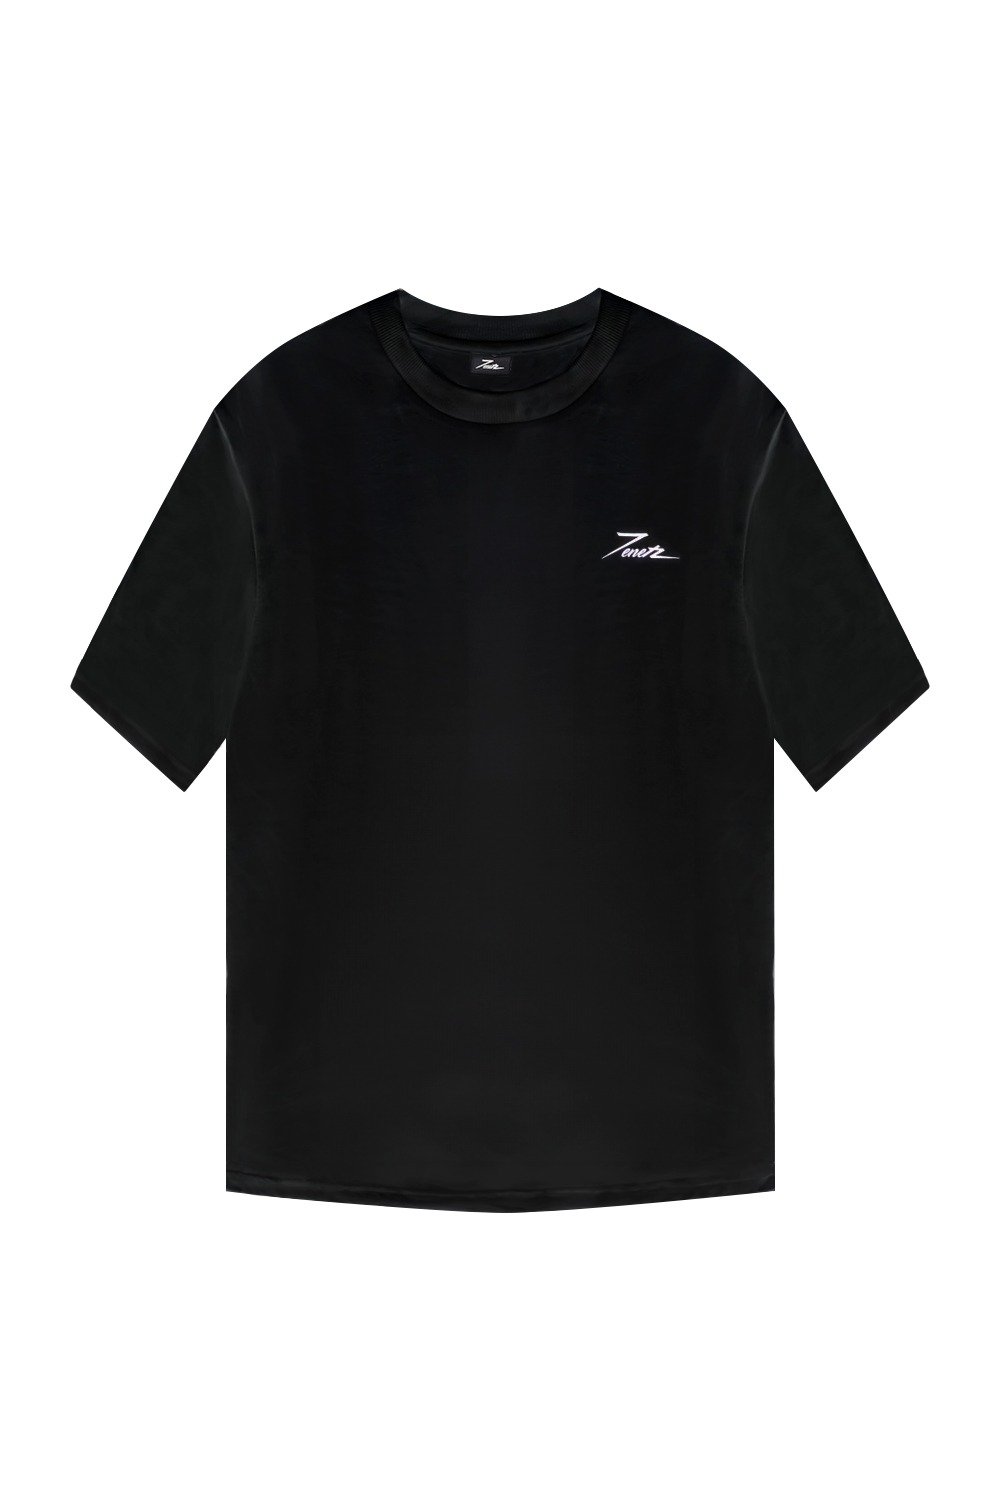 트네 베이직 티셔츠 (블랙) - 리치즈 RICHEZ